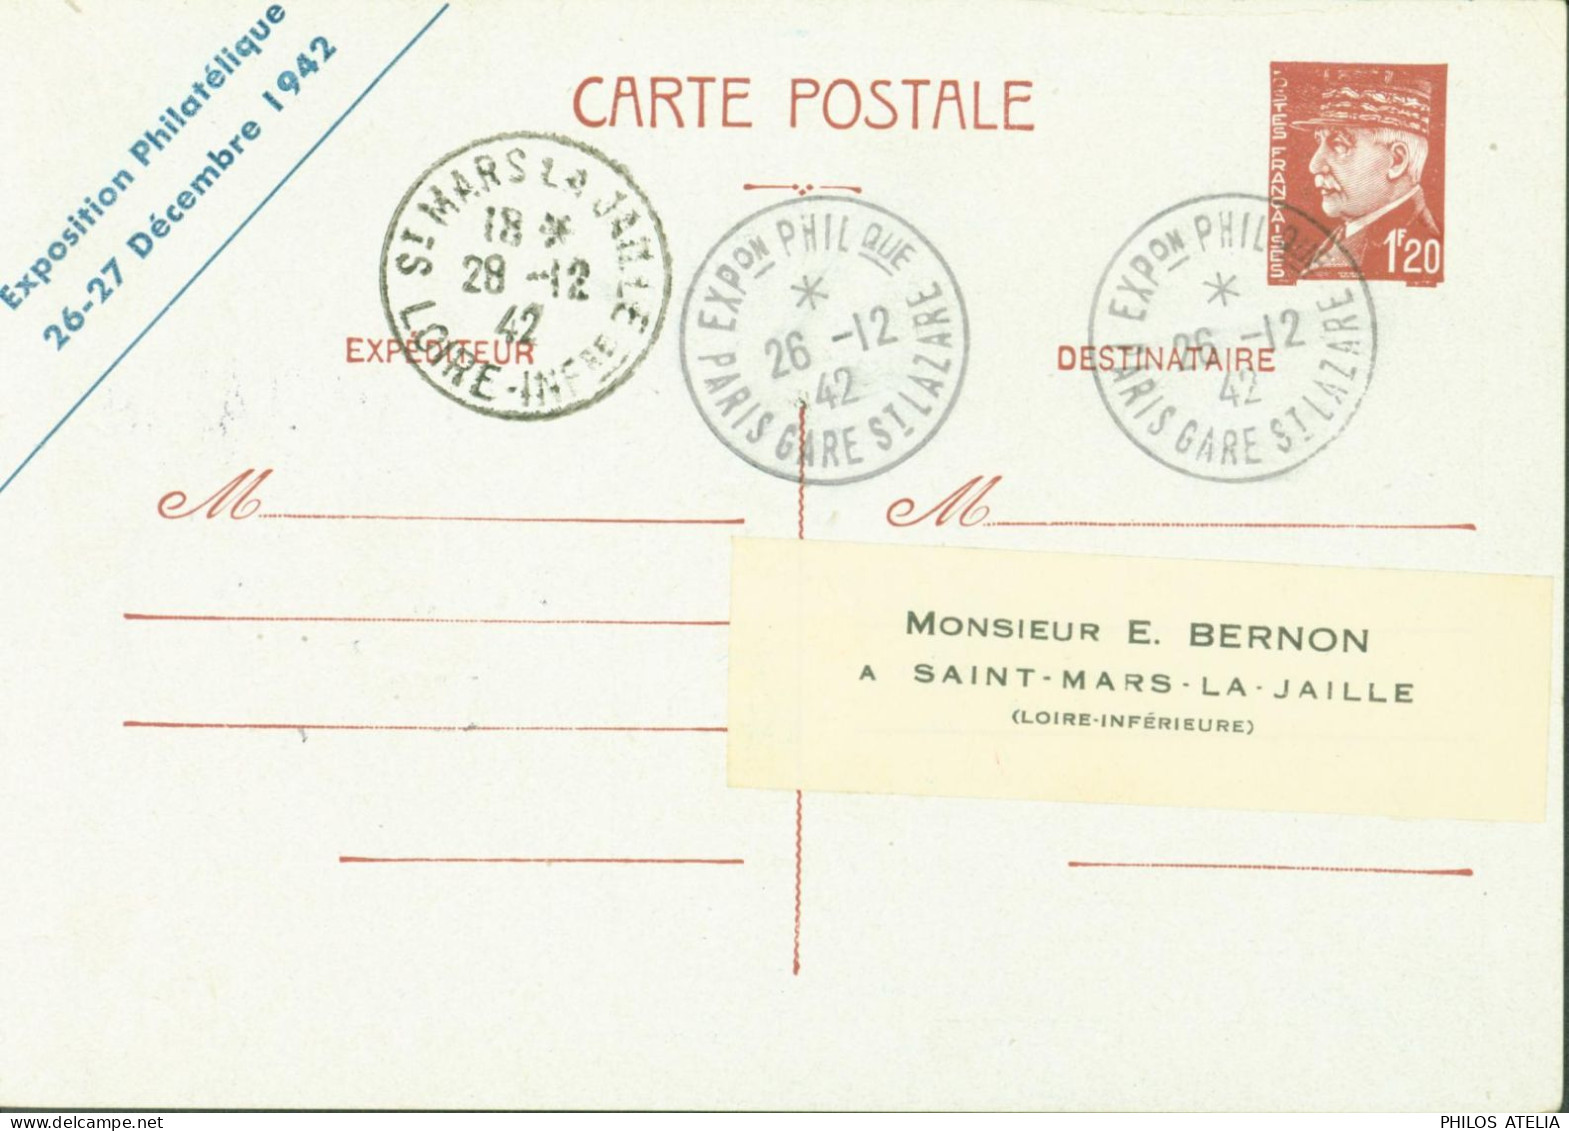 Entier Pétain 1,20 CP Repiquage Exposition Philatélique 26 27 12 1942 Les Cheminots Philatélistes YT Colis Postal 187a - Cartes Postales Repiquages (avant 1995)